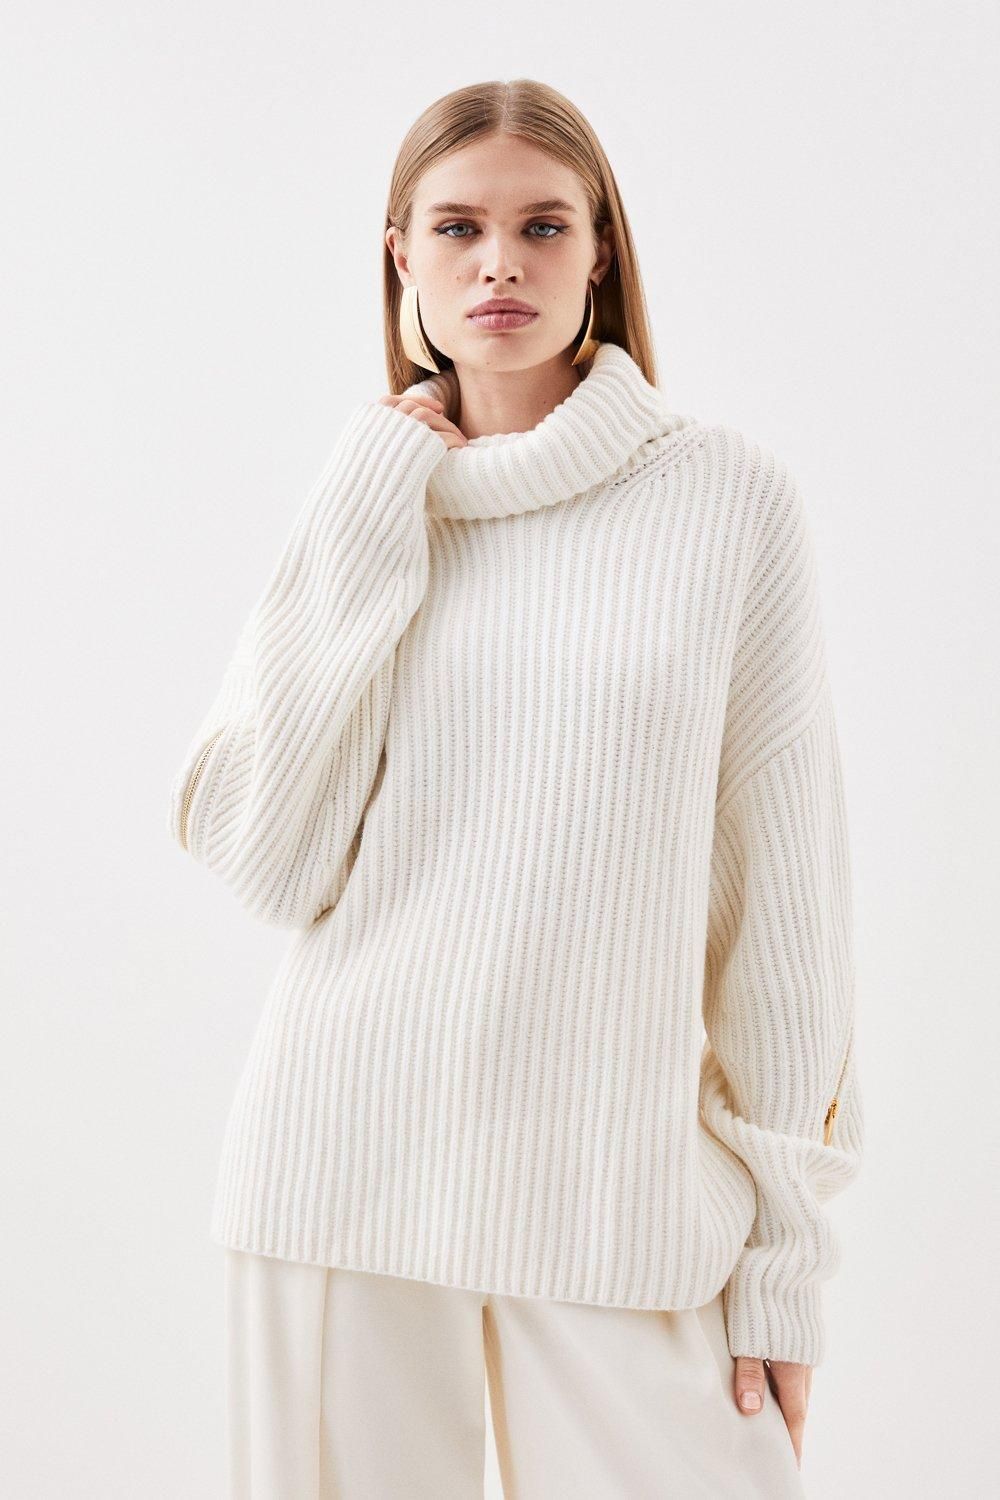 Cashmere Wool Mid Gg Roll Neck Knit Zip Detail Jumper | Karen Millen UK + IE + DE + NL